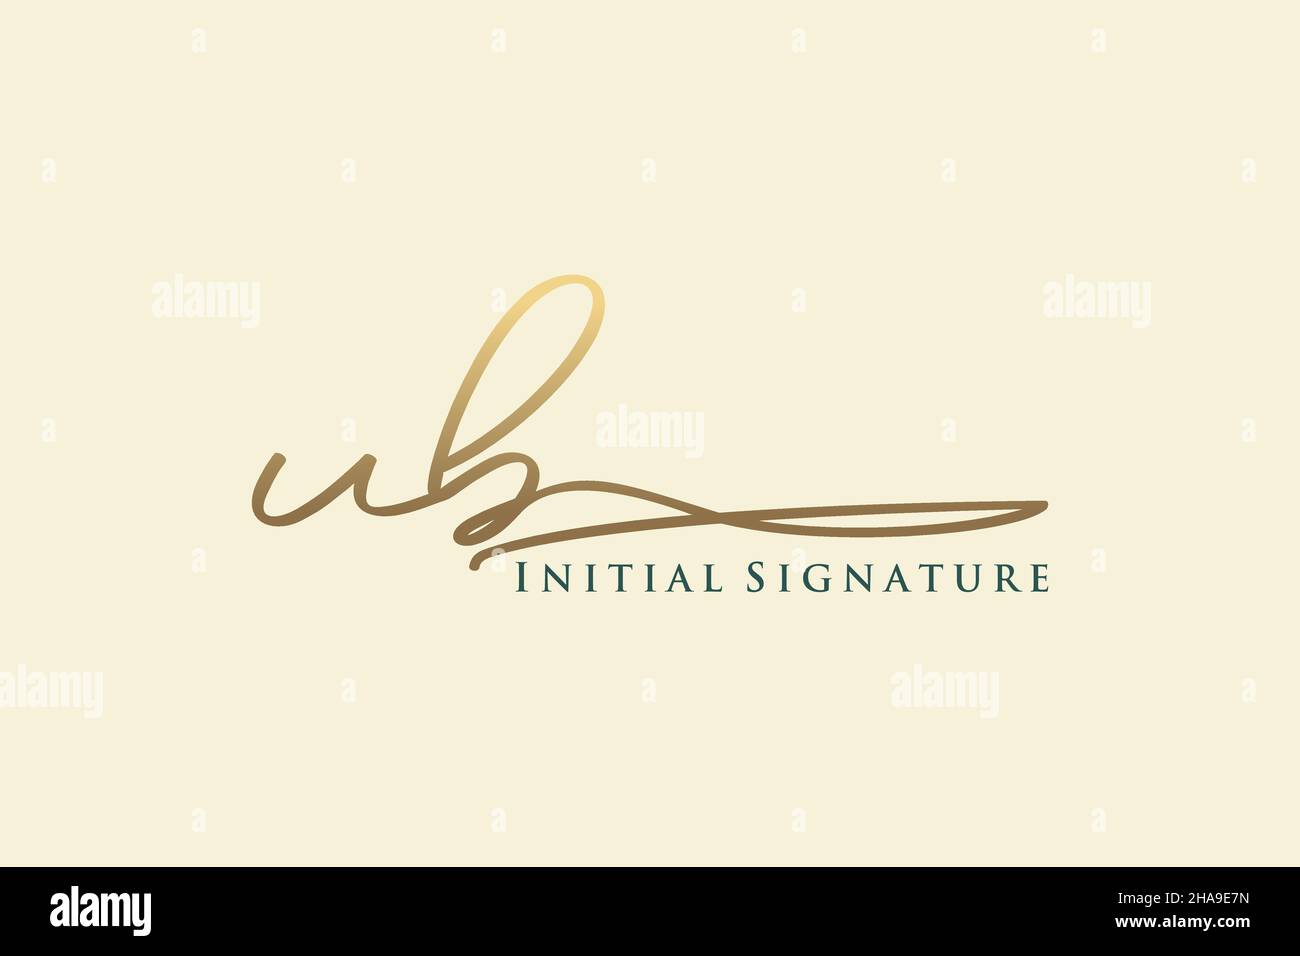 UB Letter Signature Logotipo Plantilla Diseño elegante. Letras de caligrafía dibujadas a mano Ilustración vectorial. Ilustración del Vector